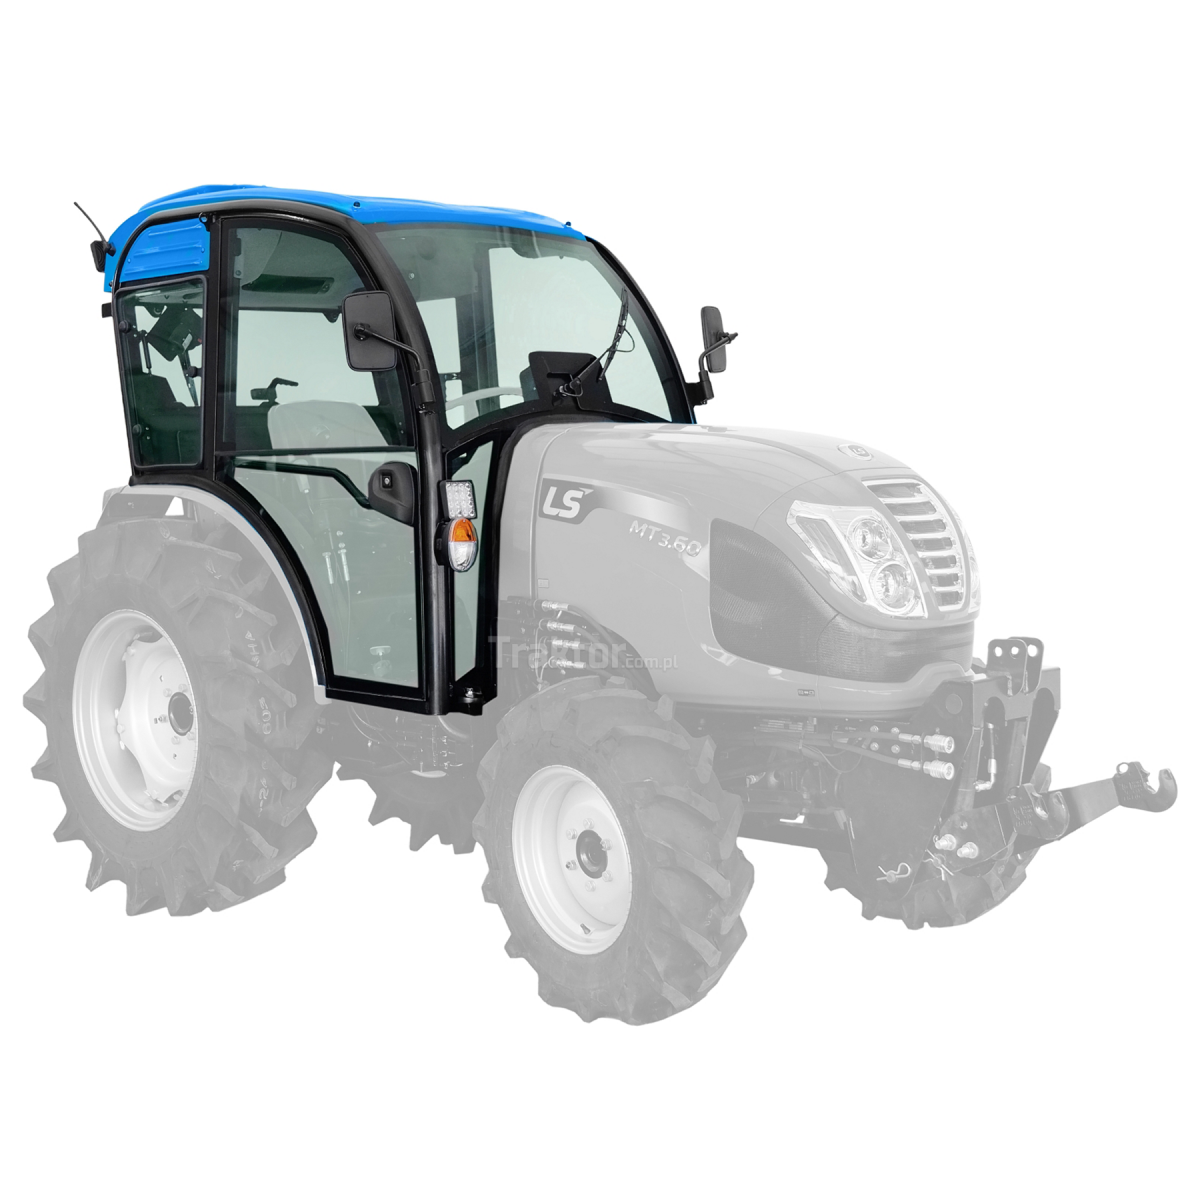 Cabina QT con aire acondicionado para el tractor LS Tractor MT3.50, MT3.60